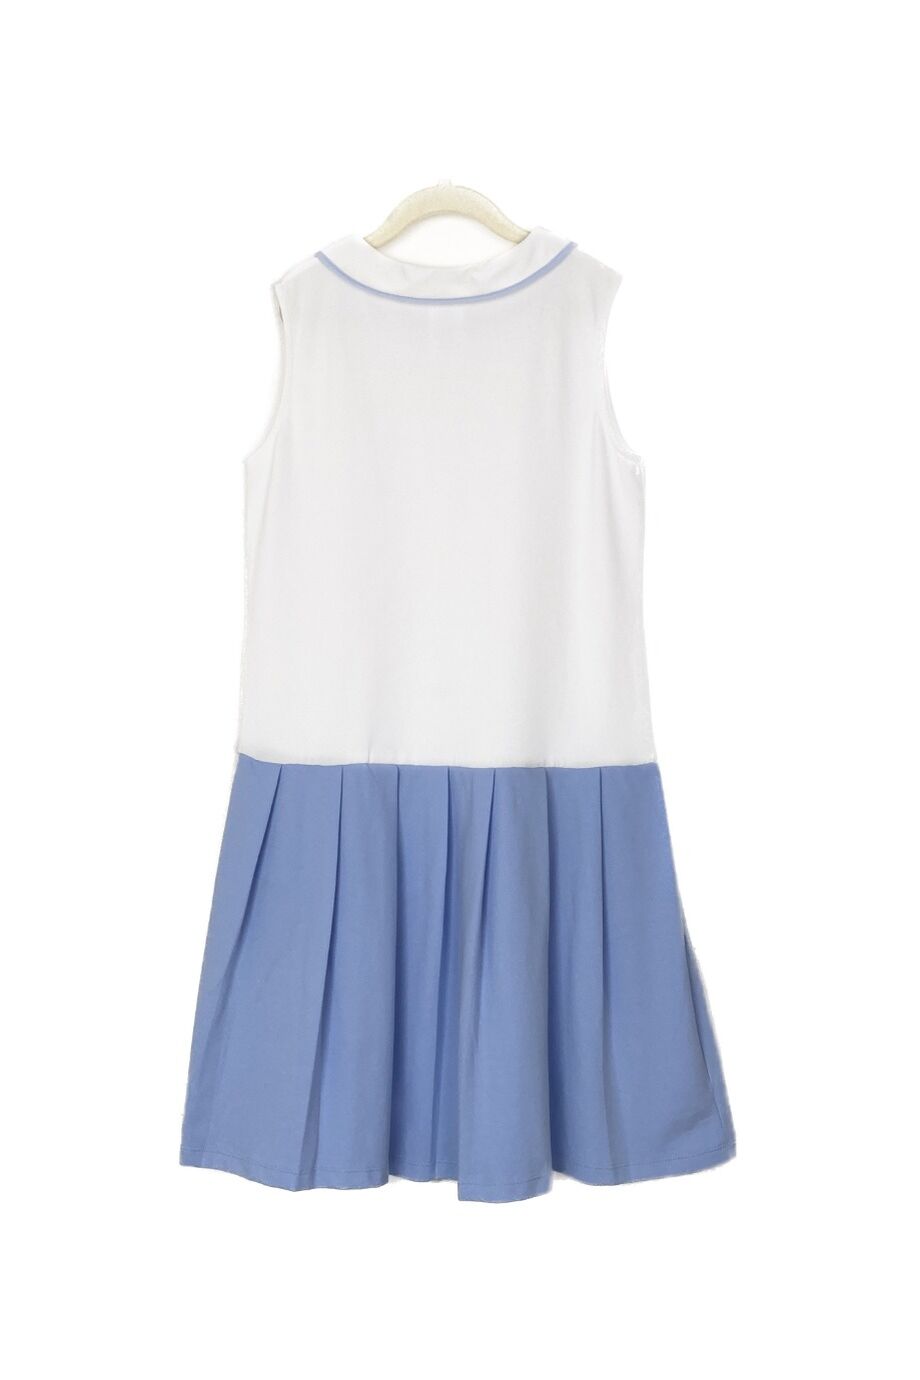 image 2 Детское платье поло белого цвета с голубой юбкой